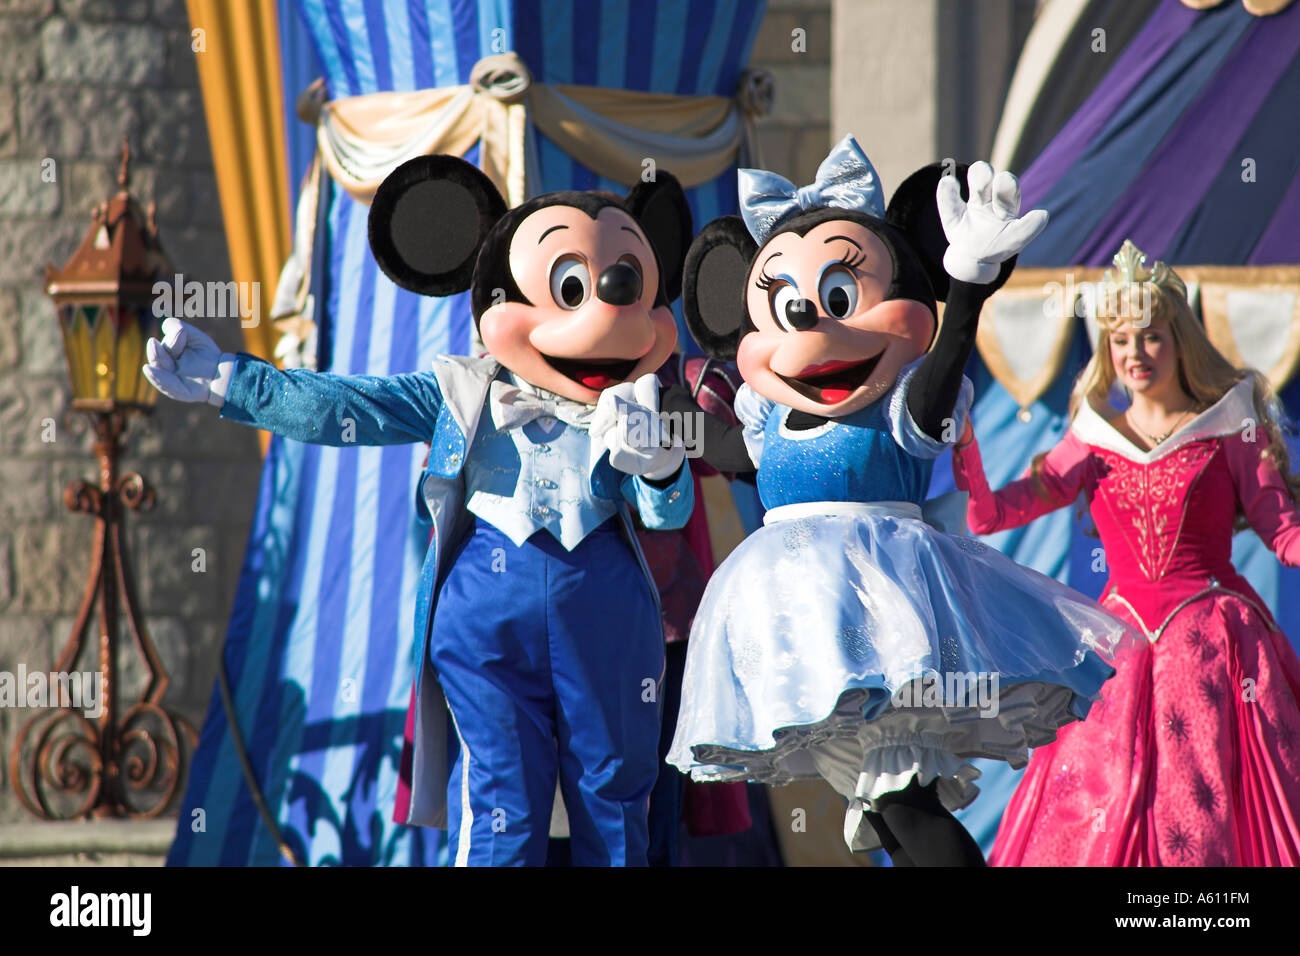 Topolino e Minnie Mouse sul palco, il Magic Kingdom, Orlando, Florida, Stati Uniti d'America Foto Stock